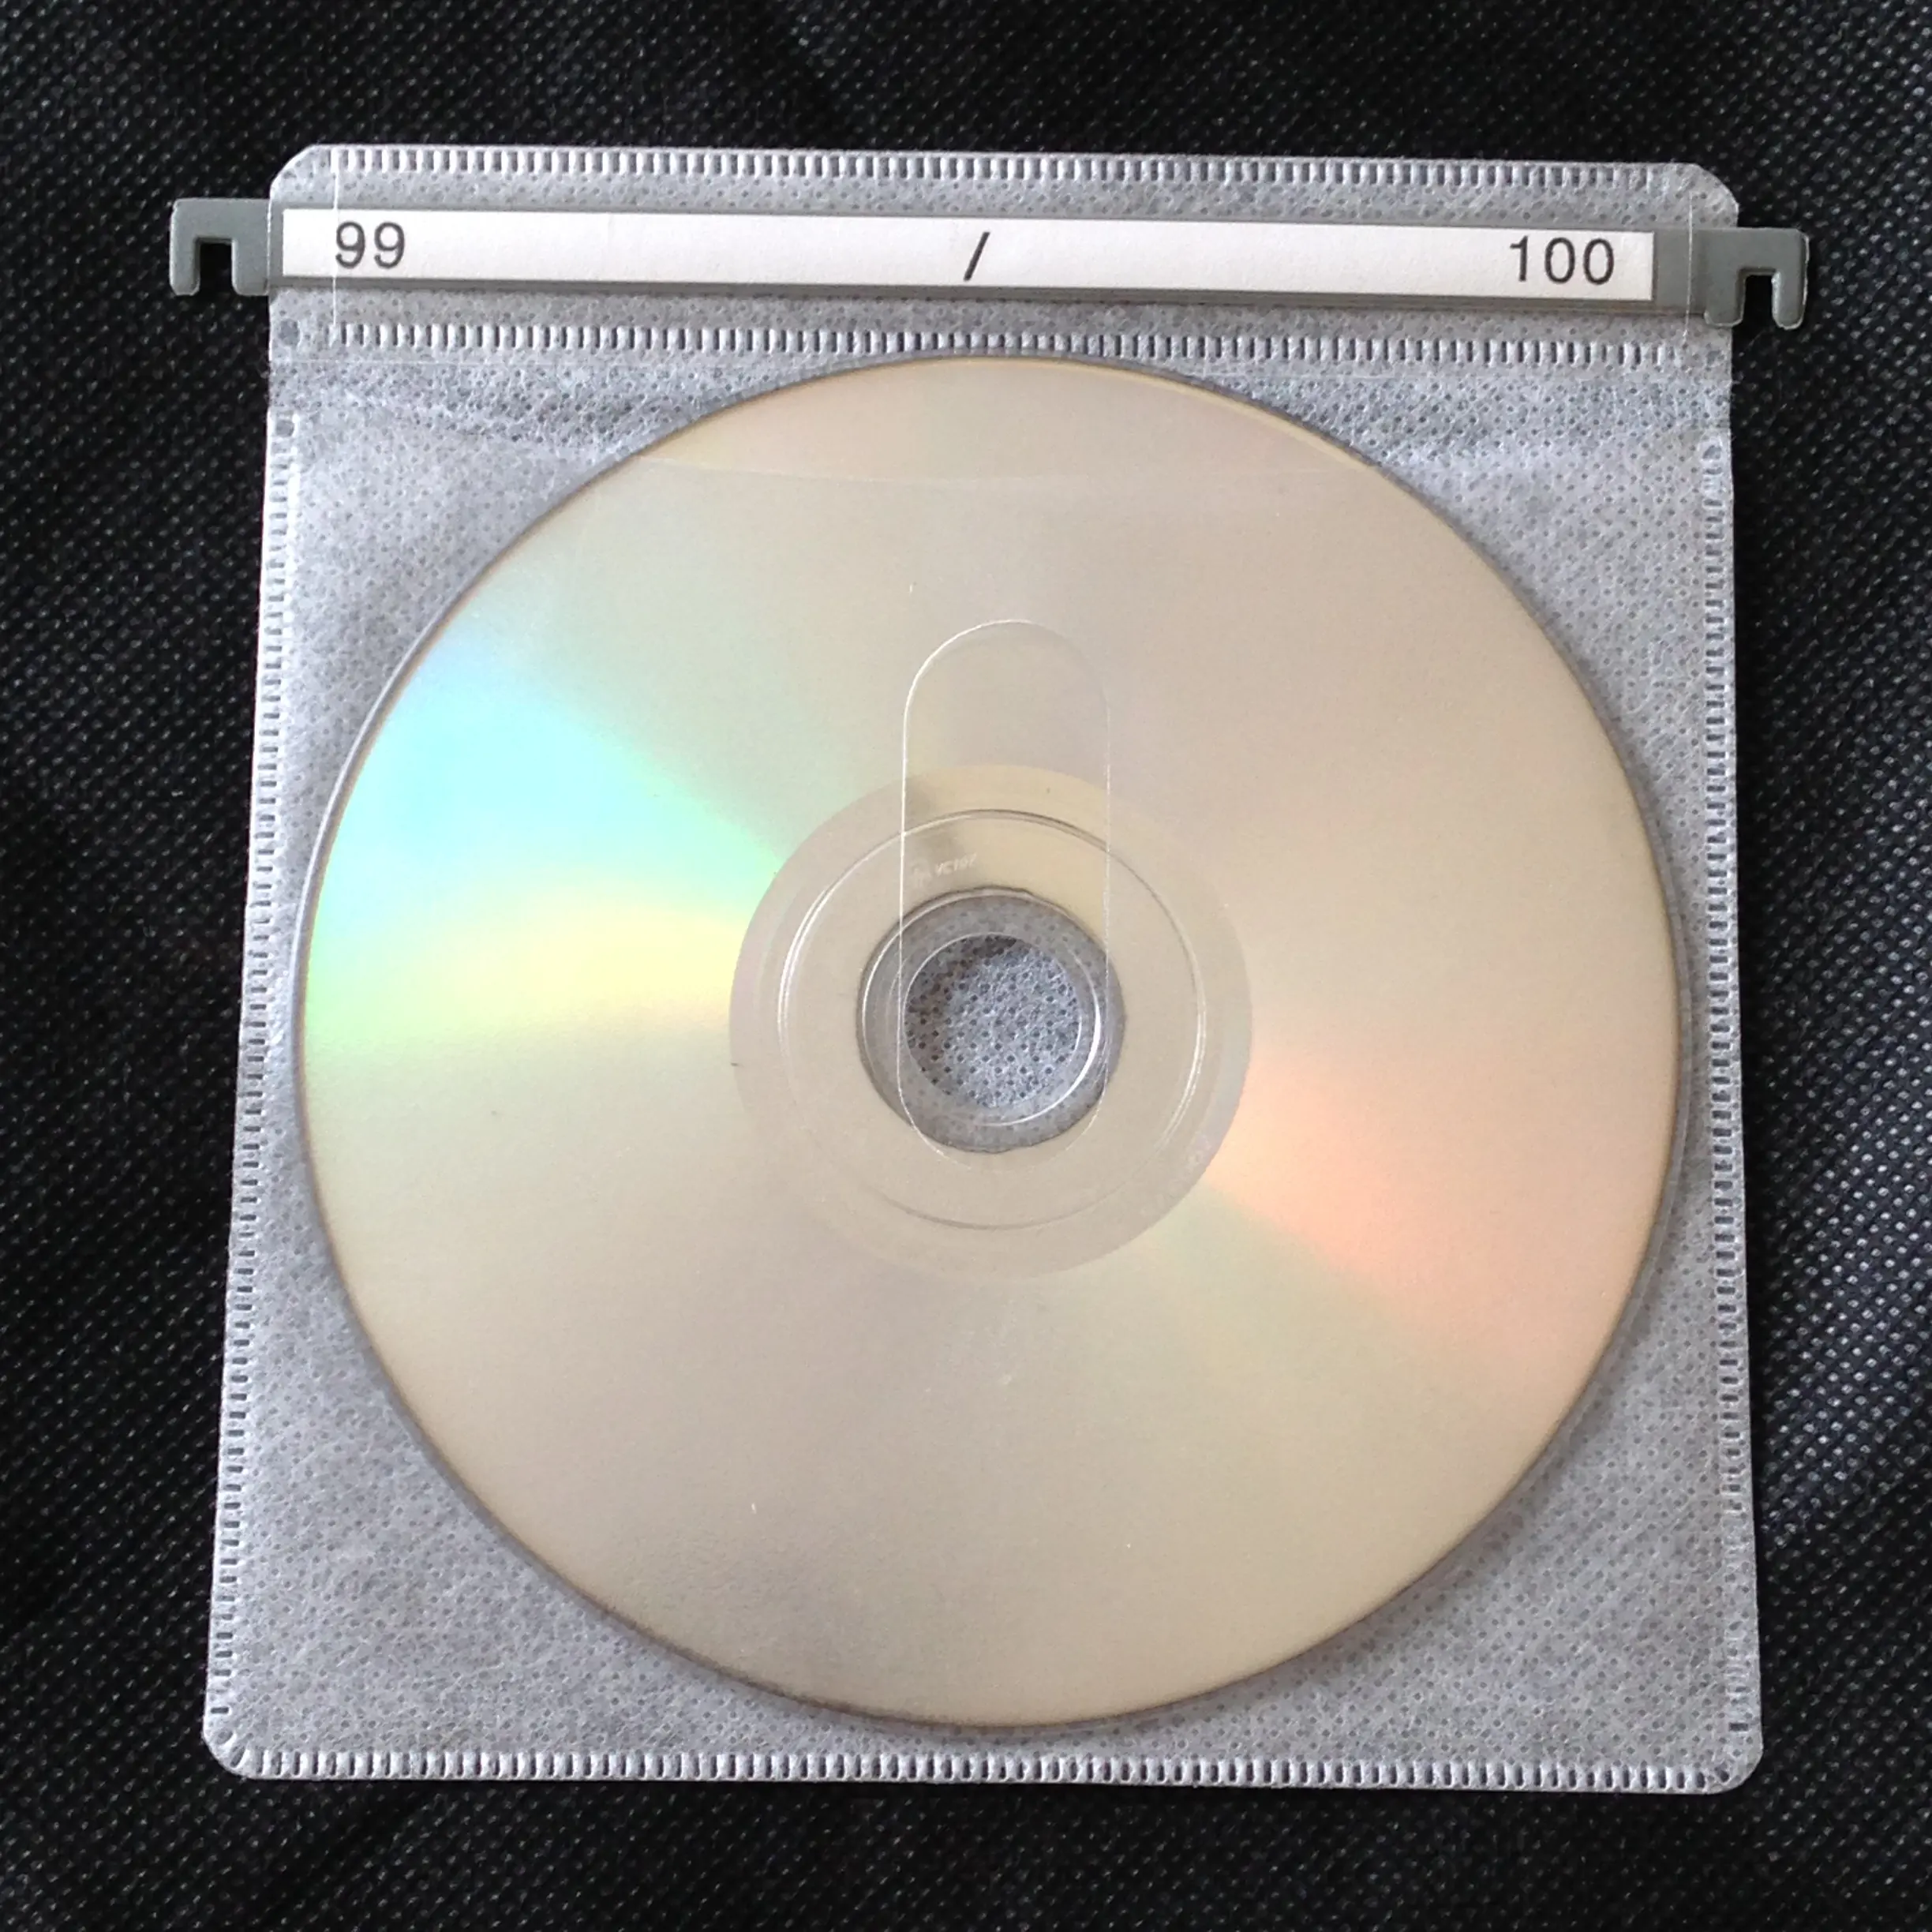 Mangas de recarga de plástico para caixa de alumínio, caixa de armazenamento em cd/dvd ou embalagem mega